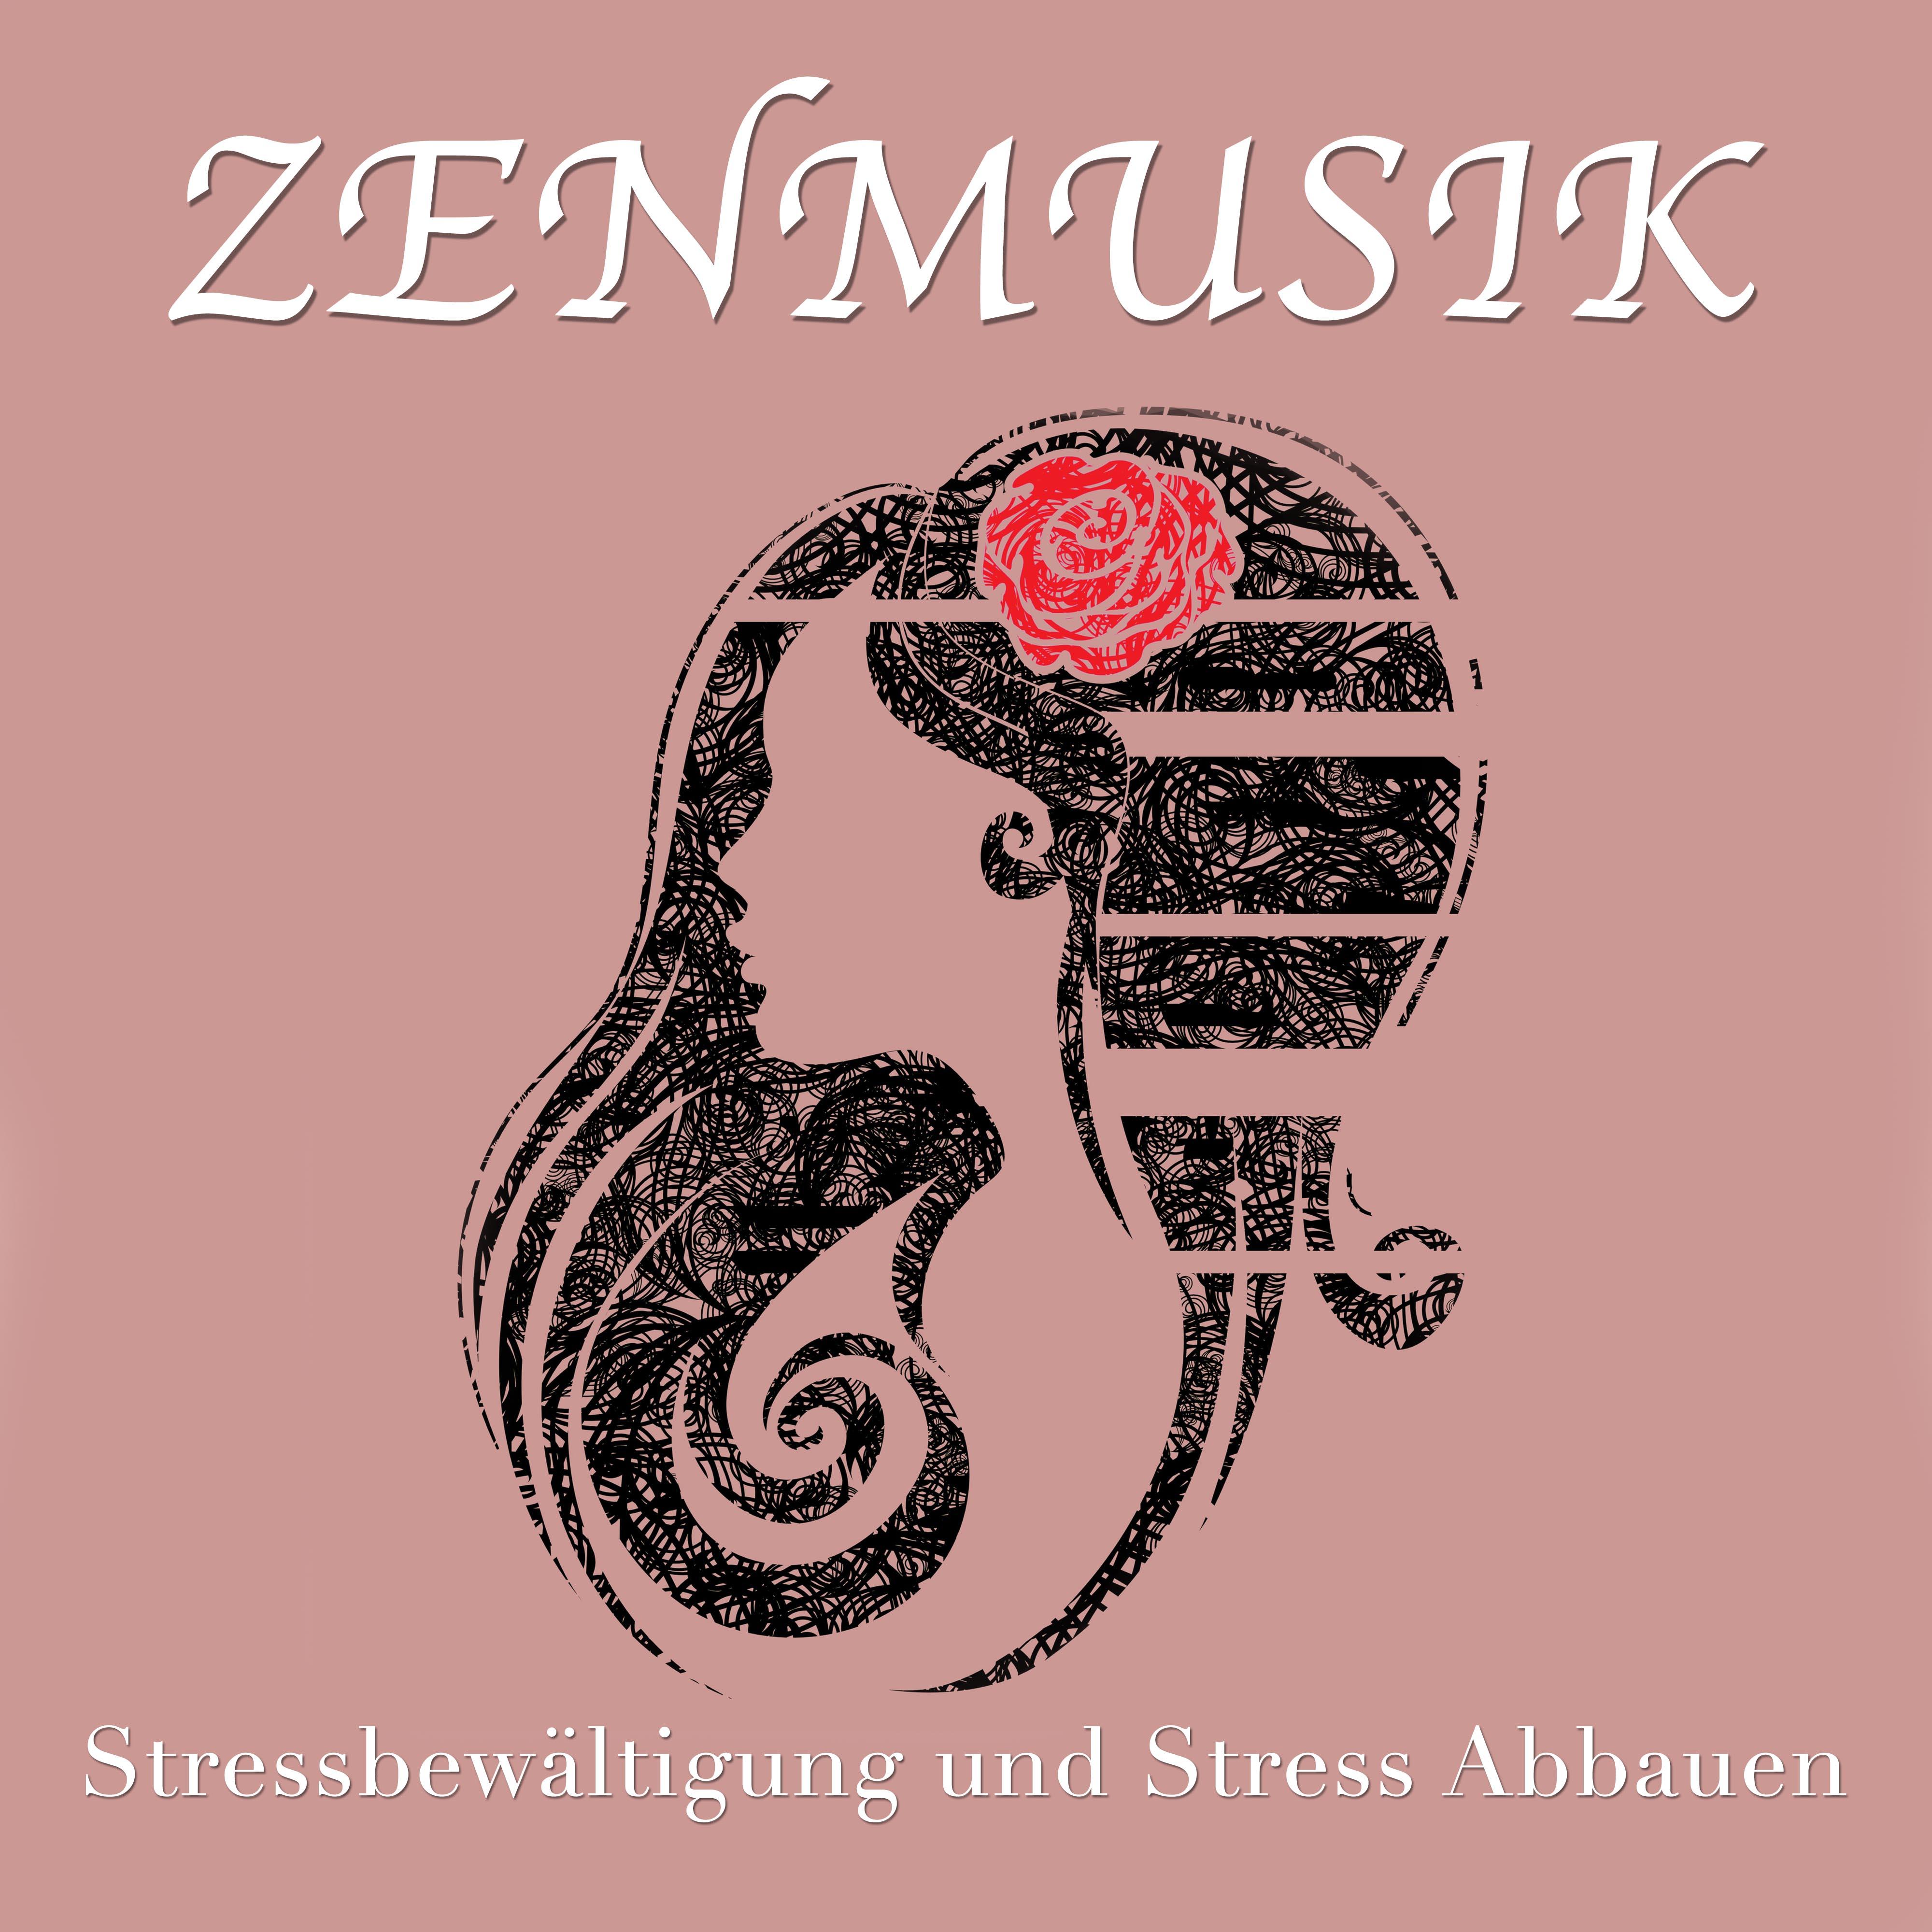 Zenmusik  Stressbew ltigung und Stress Abbauen. Die Perfekte Musik zur Entspannung